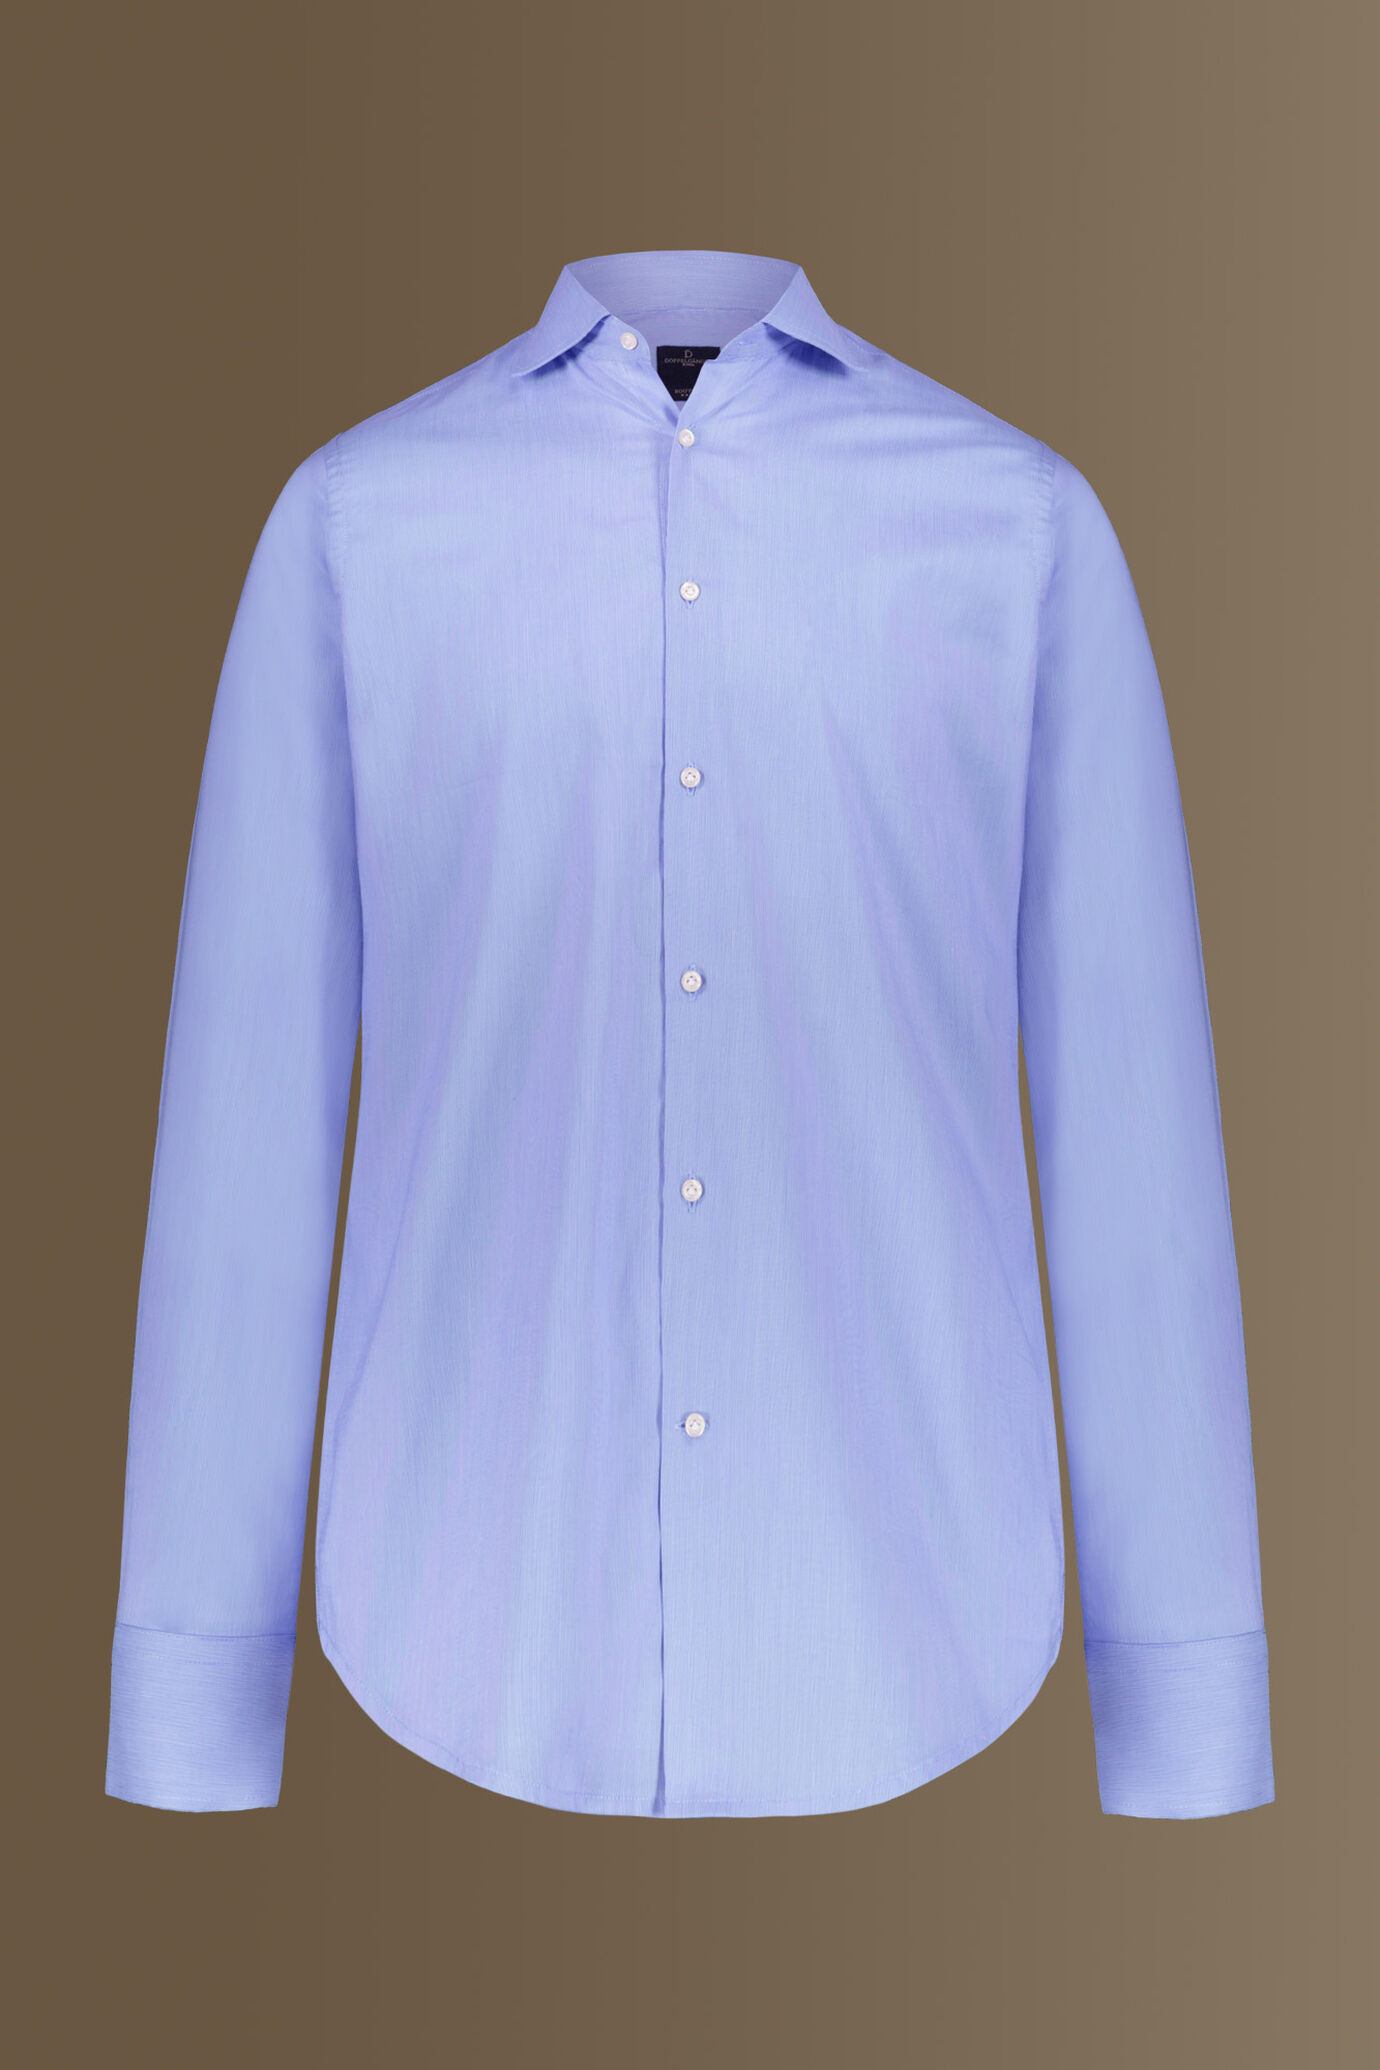 Camicia classica uomo collo francese 100% cotone tinto filo a righe sottili image number 4